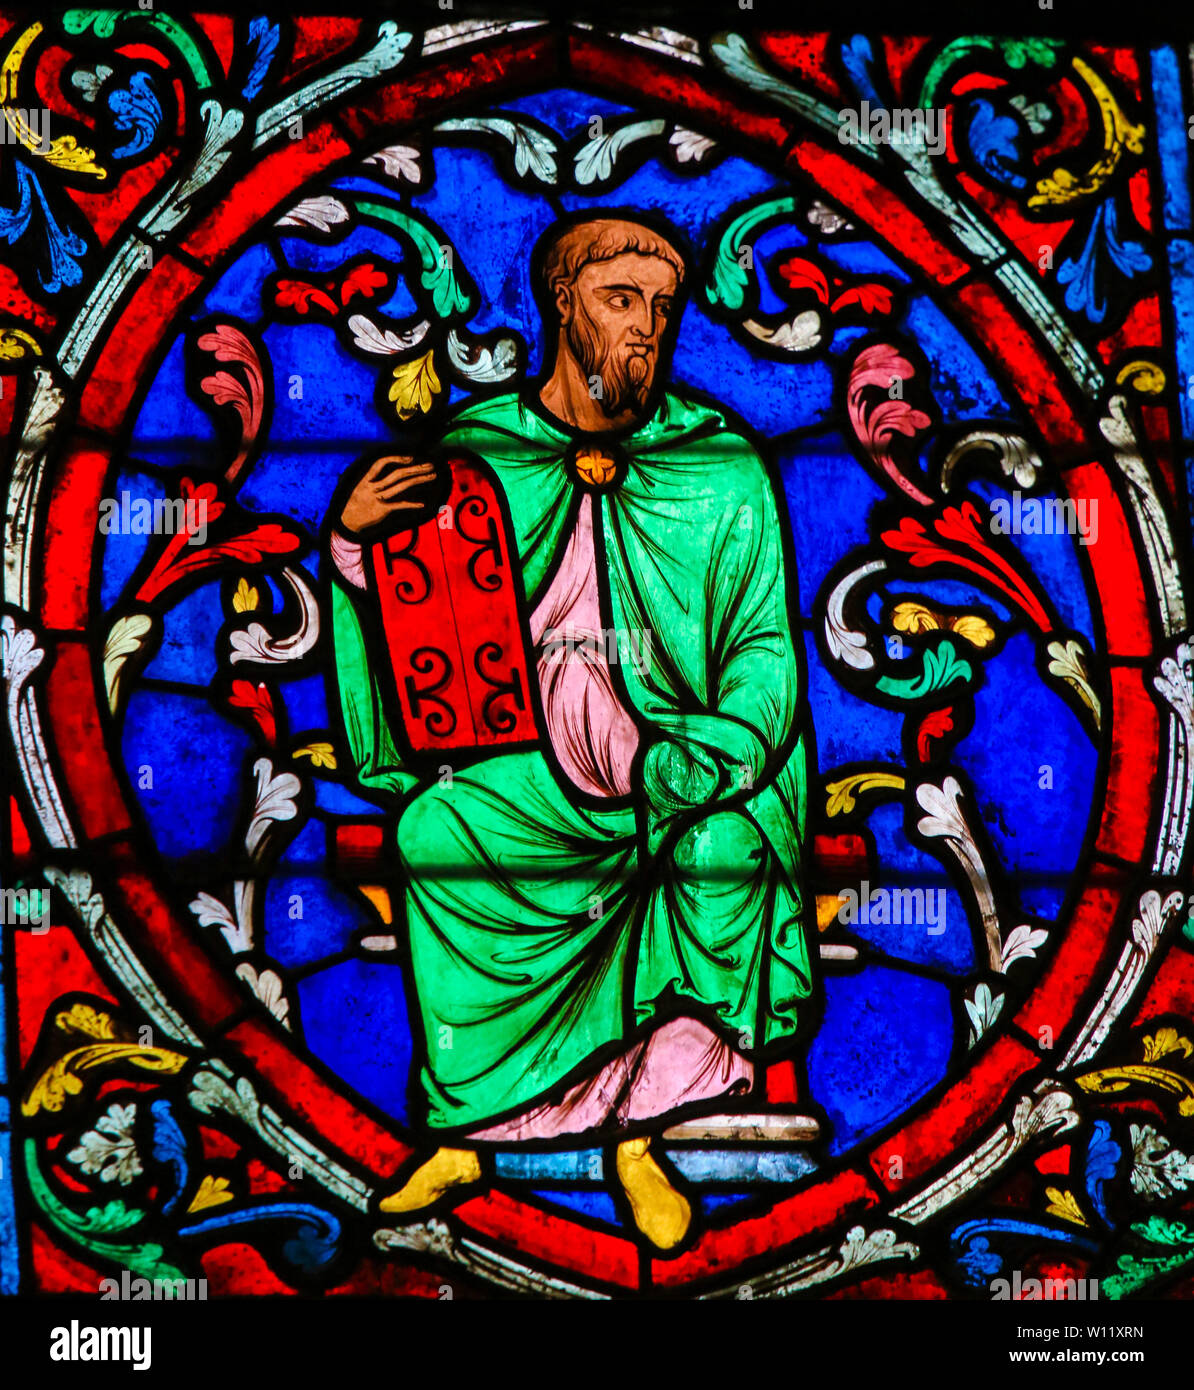 Vitraux dans la Cathédrale de Notre Dame, Paris, France, représentant Moïse portant les tables de pierre sur lesquelles les Dix Commandements Banque D'Images